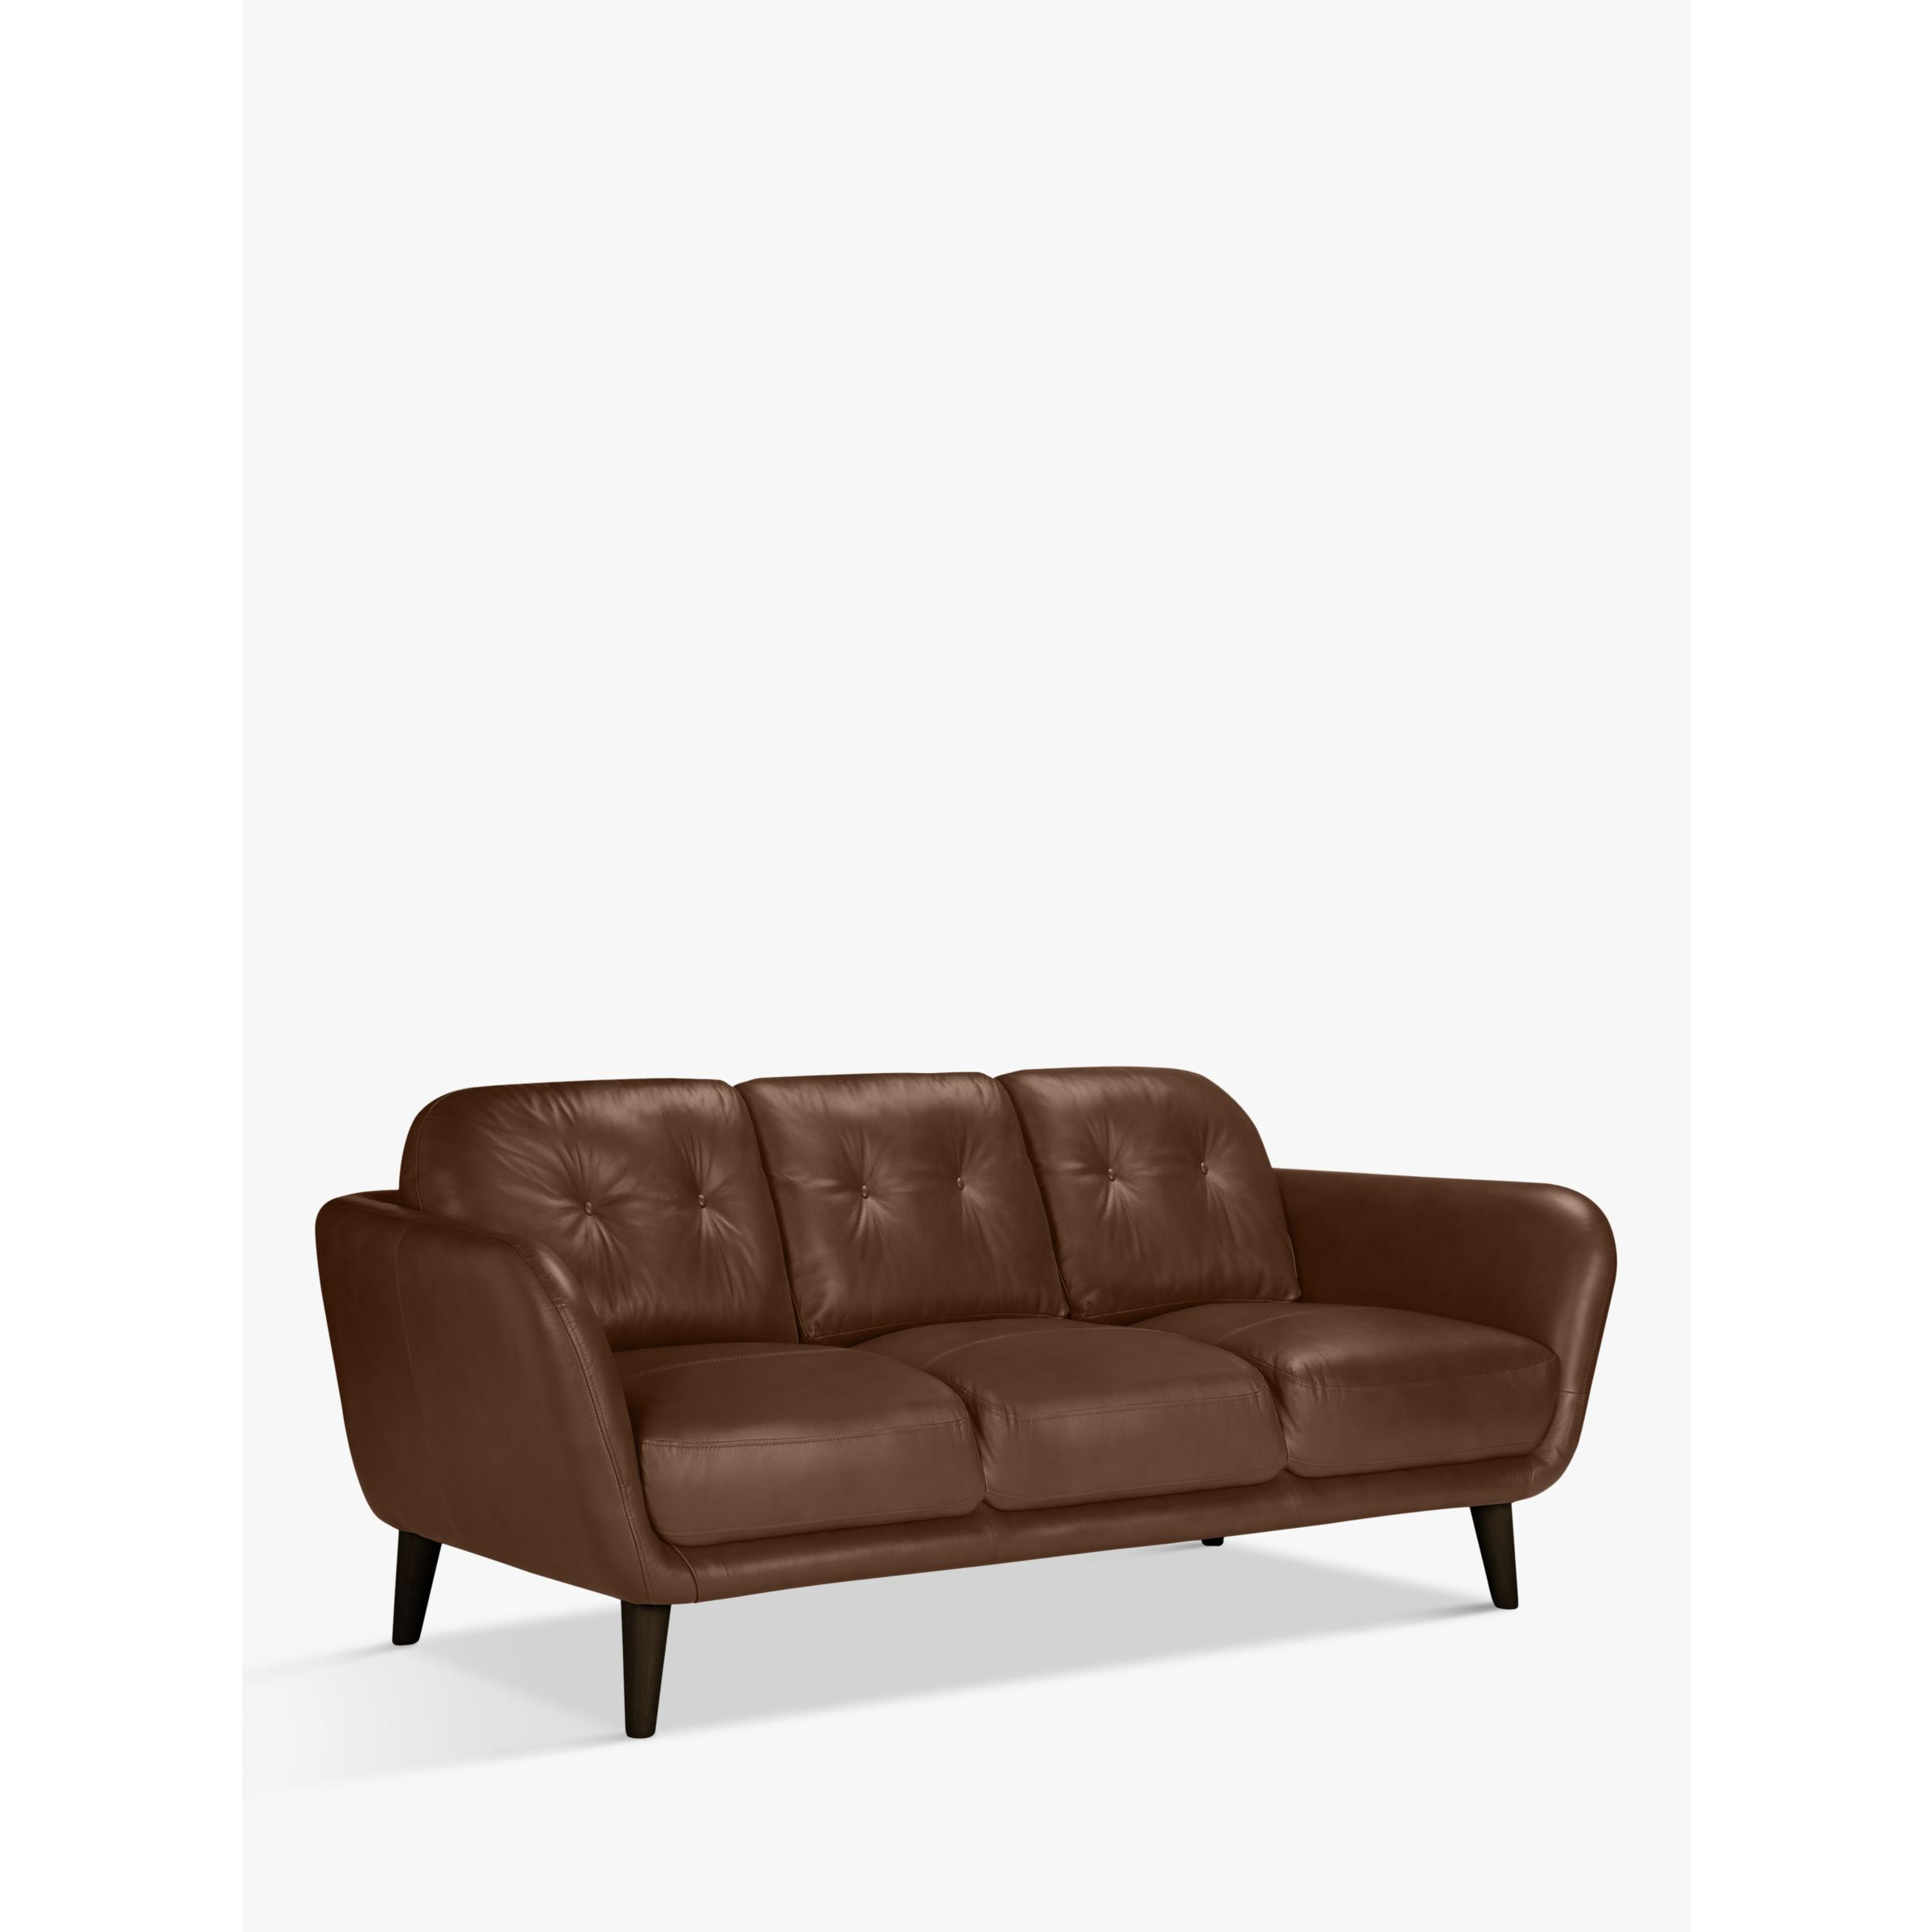 John Lewis Arlo Large 3 Seater Leather Sofa, Dark Leg - image 1